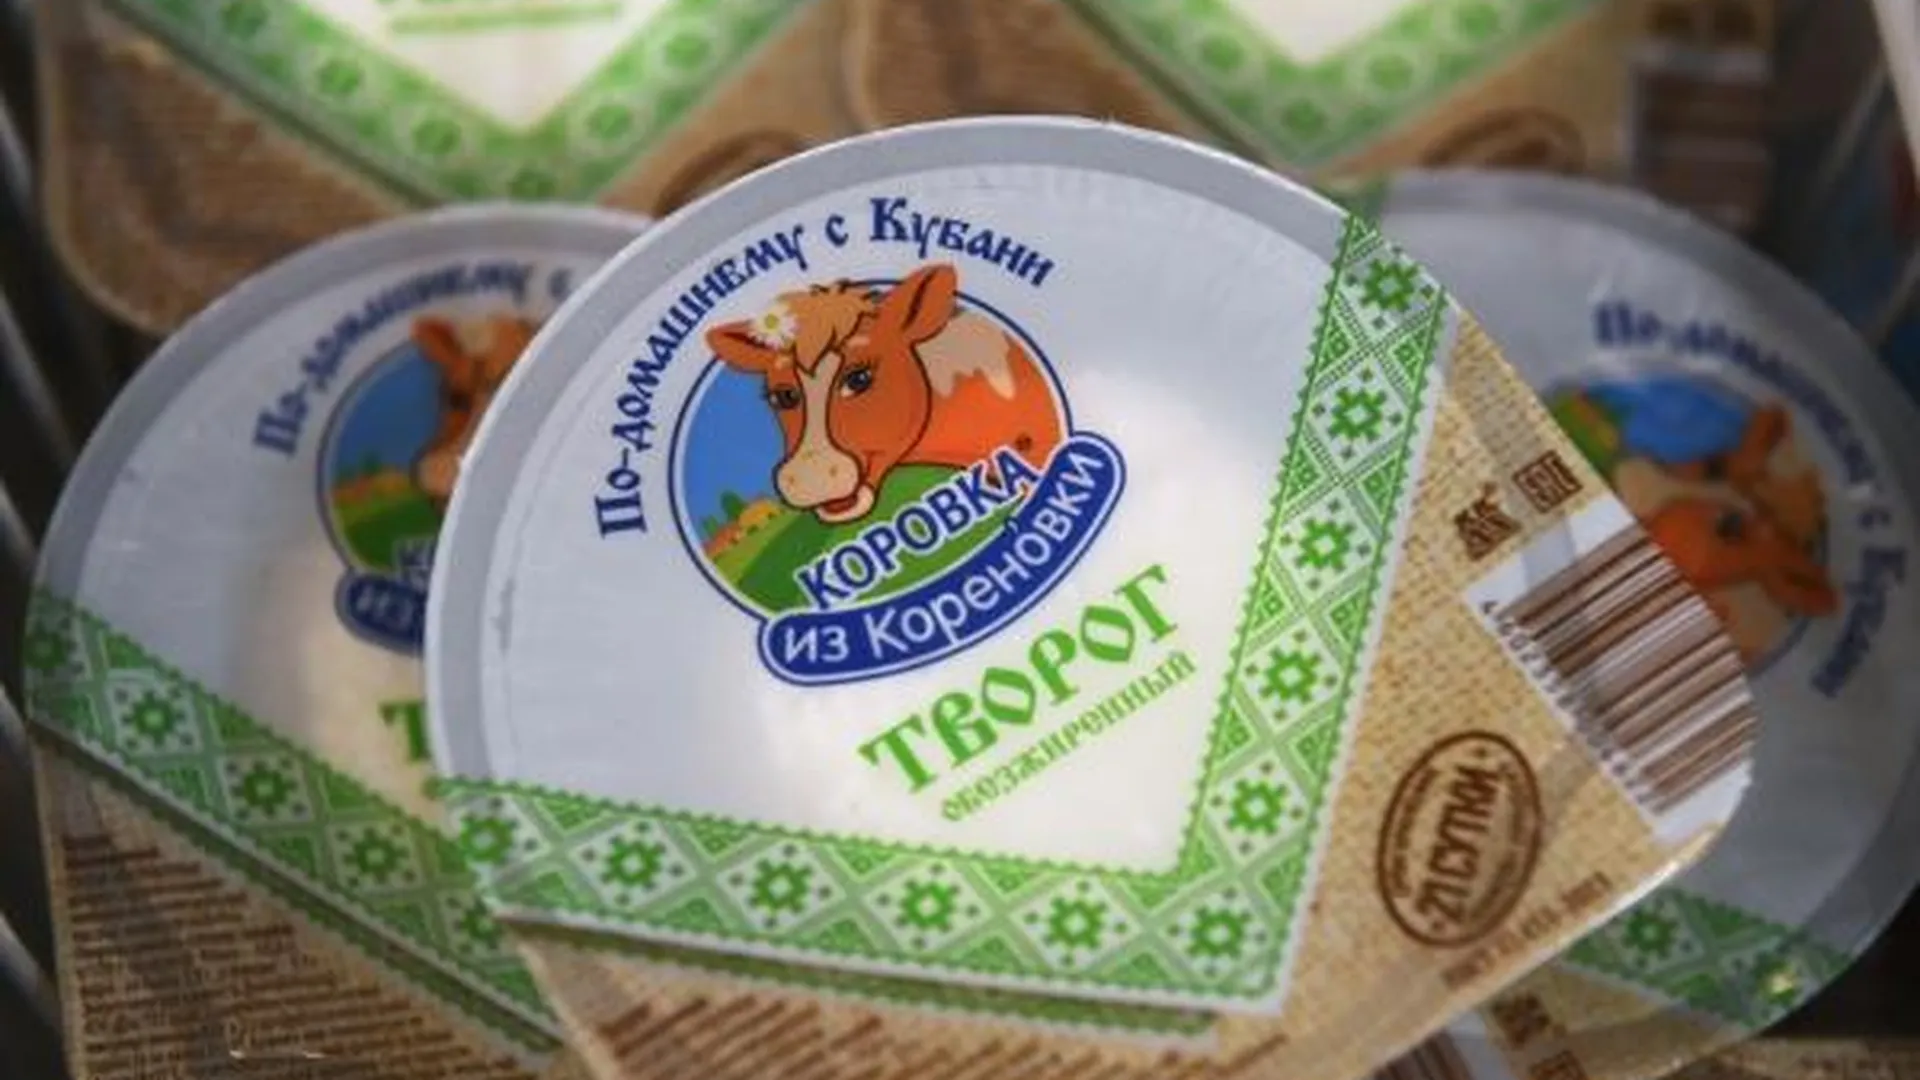 Врач Кривошеева предупредила о вероятной опасности обезжиренных продуктов